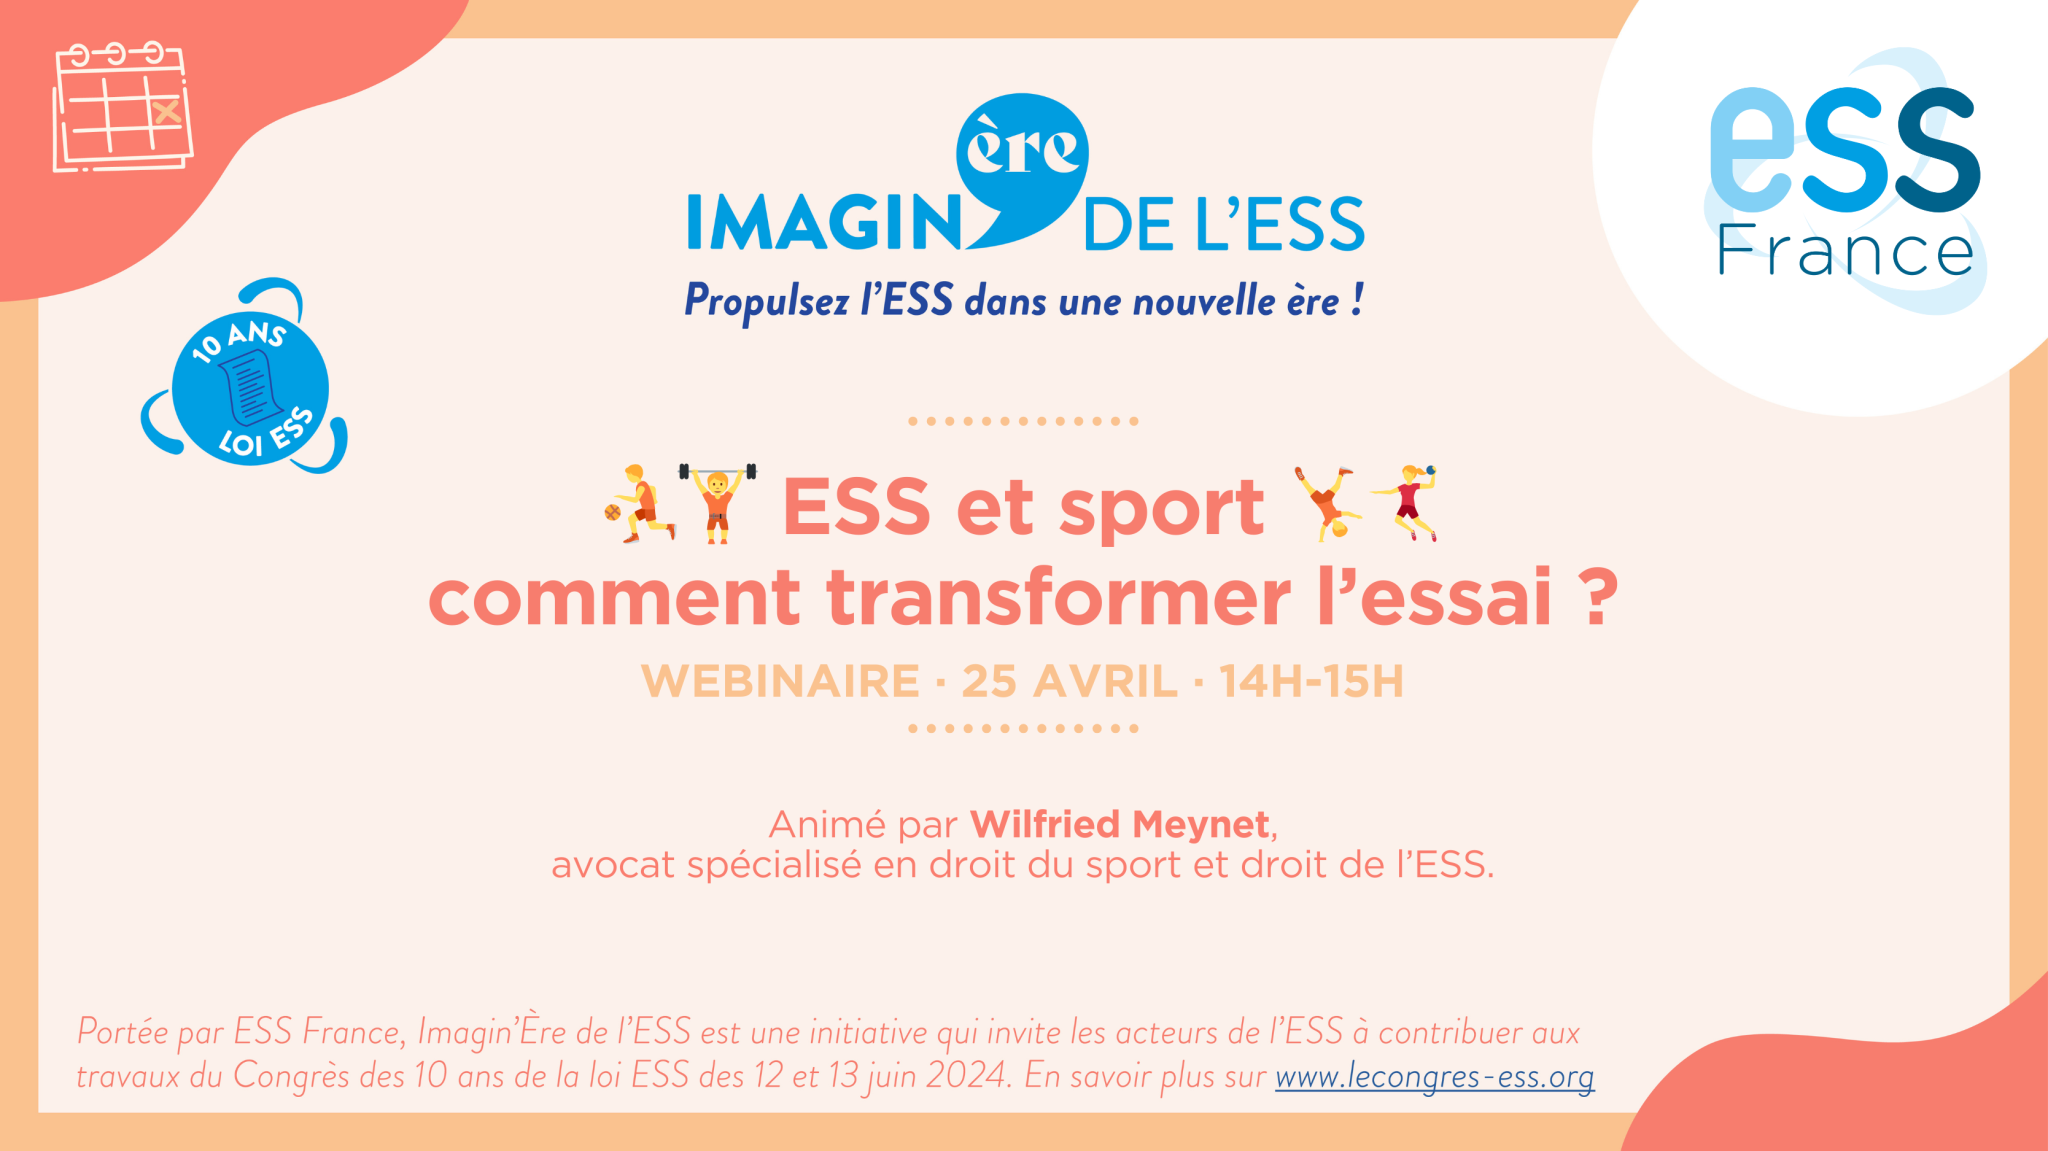 ESS et sport : comment transformer l'essai ? webinaire d'ESS France dans le cadre d'Imagin'Ère de l'ESS